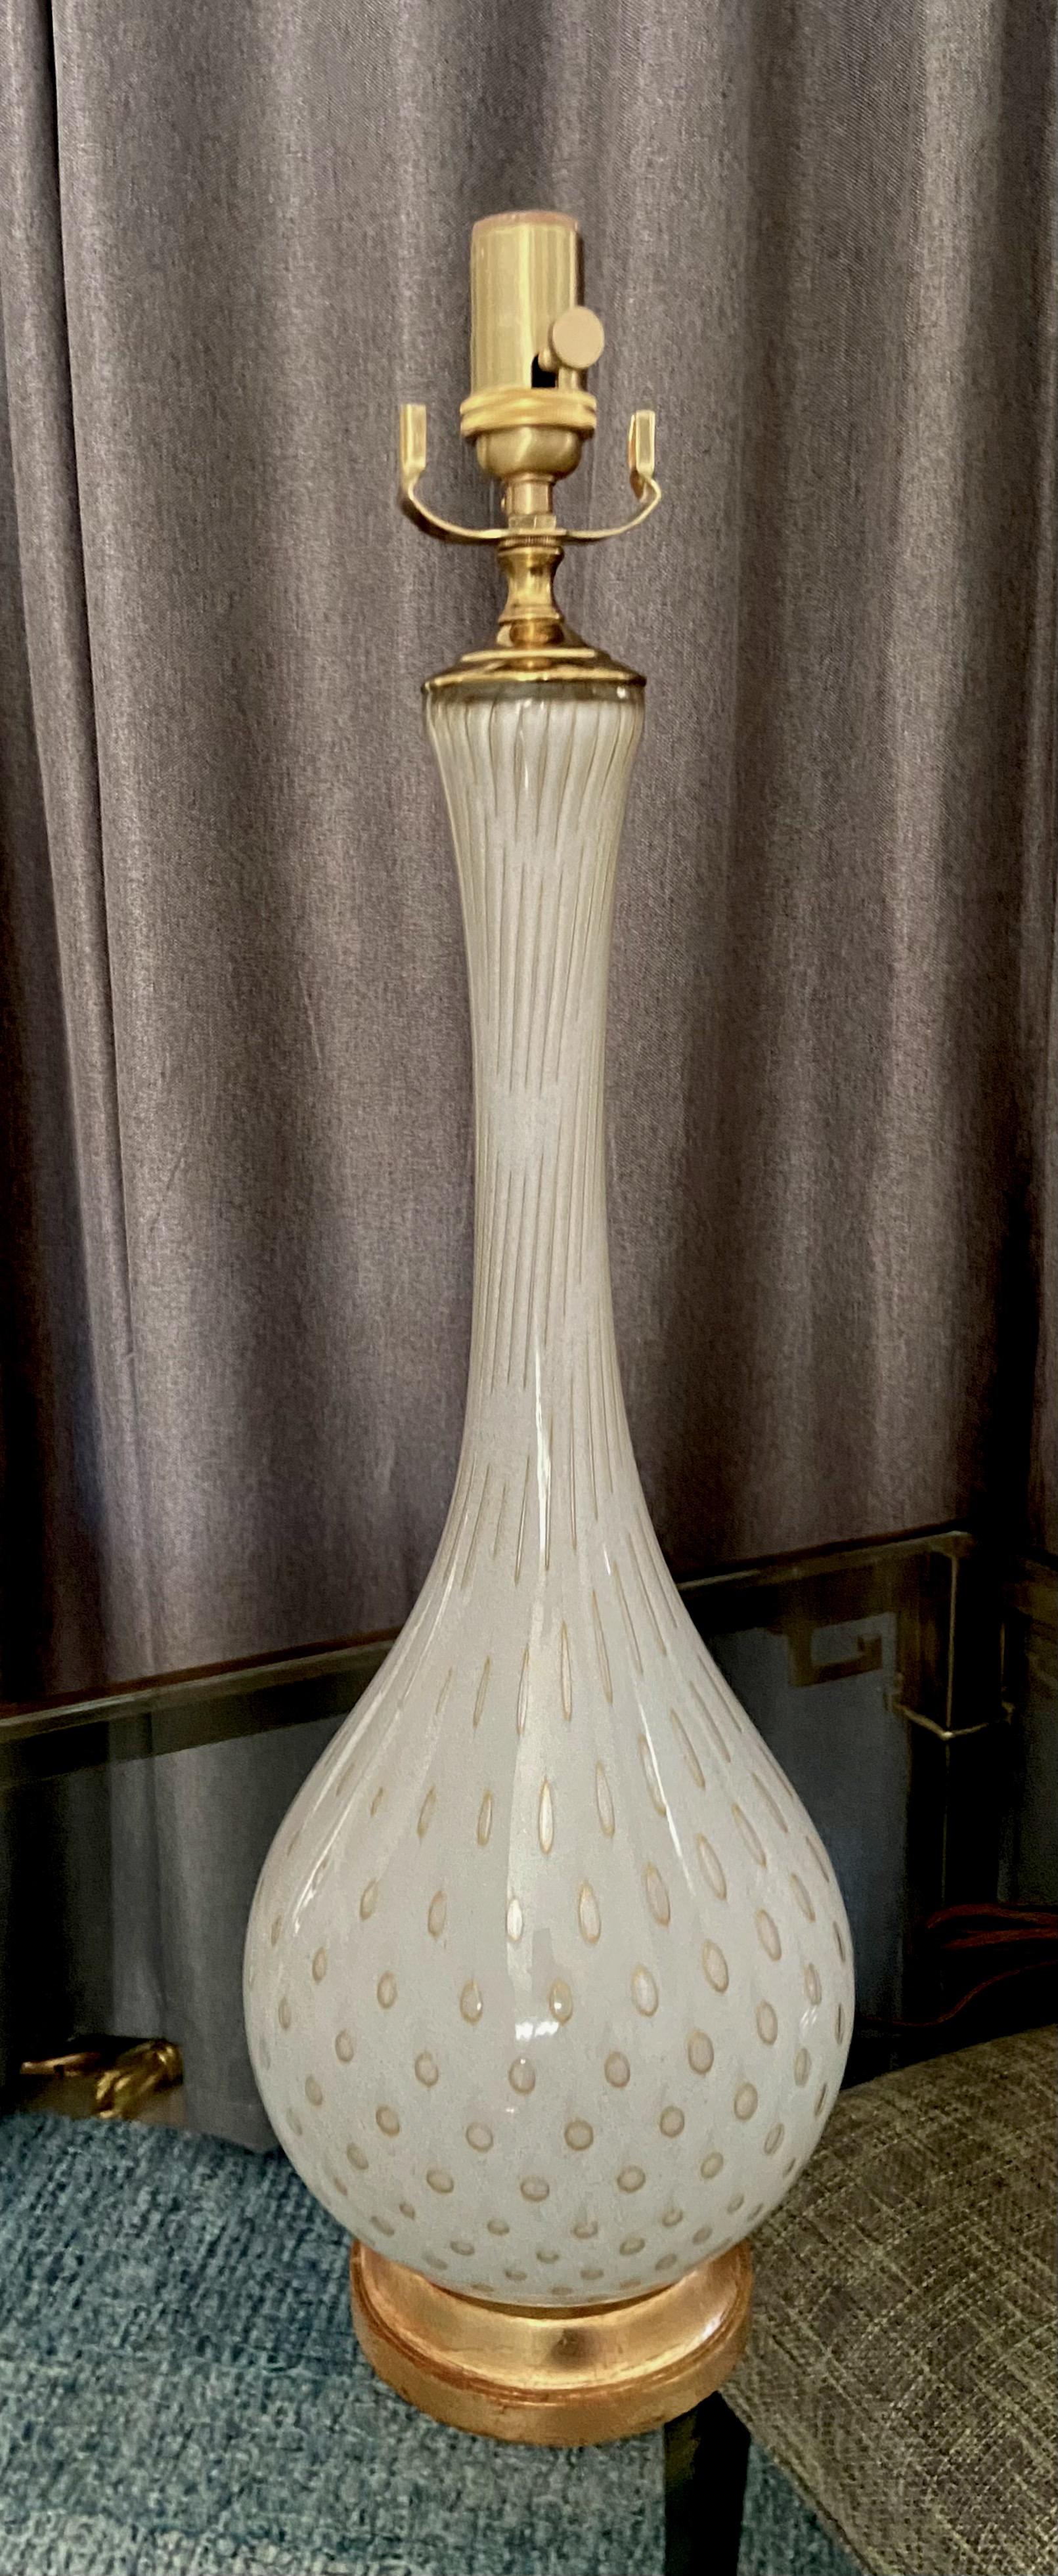 Grande lampe de table en verre à bulles contrôlées blanc et or soufflé à la main par Alfredo Barbini à Murano (Italie). Les lampes reposent sur une base en bois doré qui a été recâblée avec une nouvelle douille à trois voies en laiton et un cordon